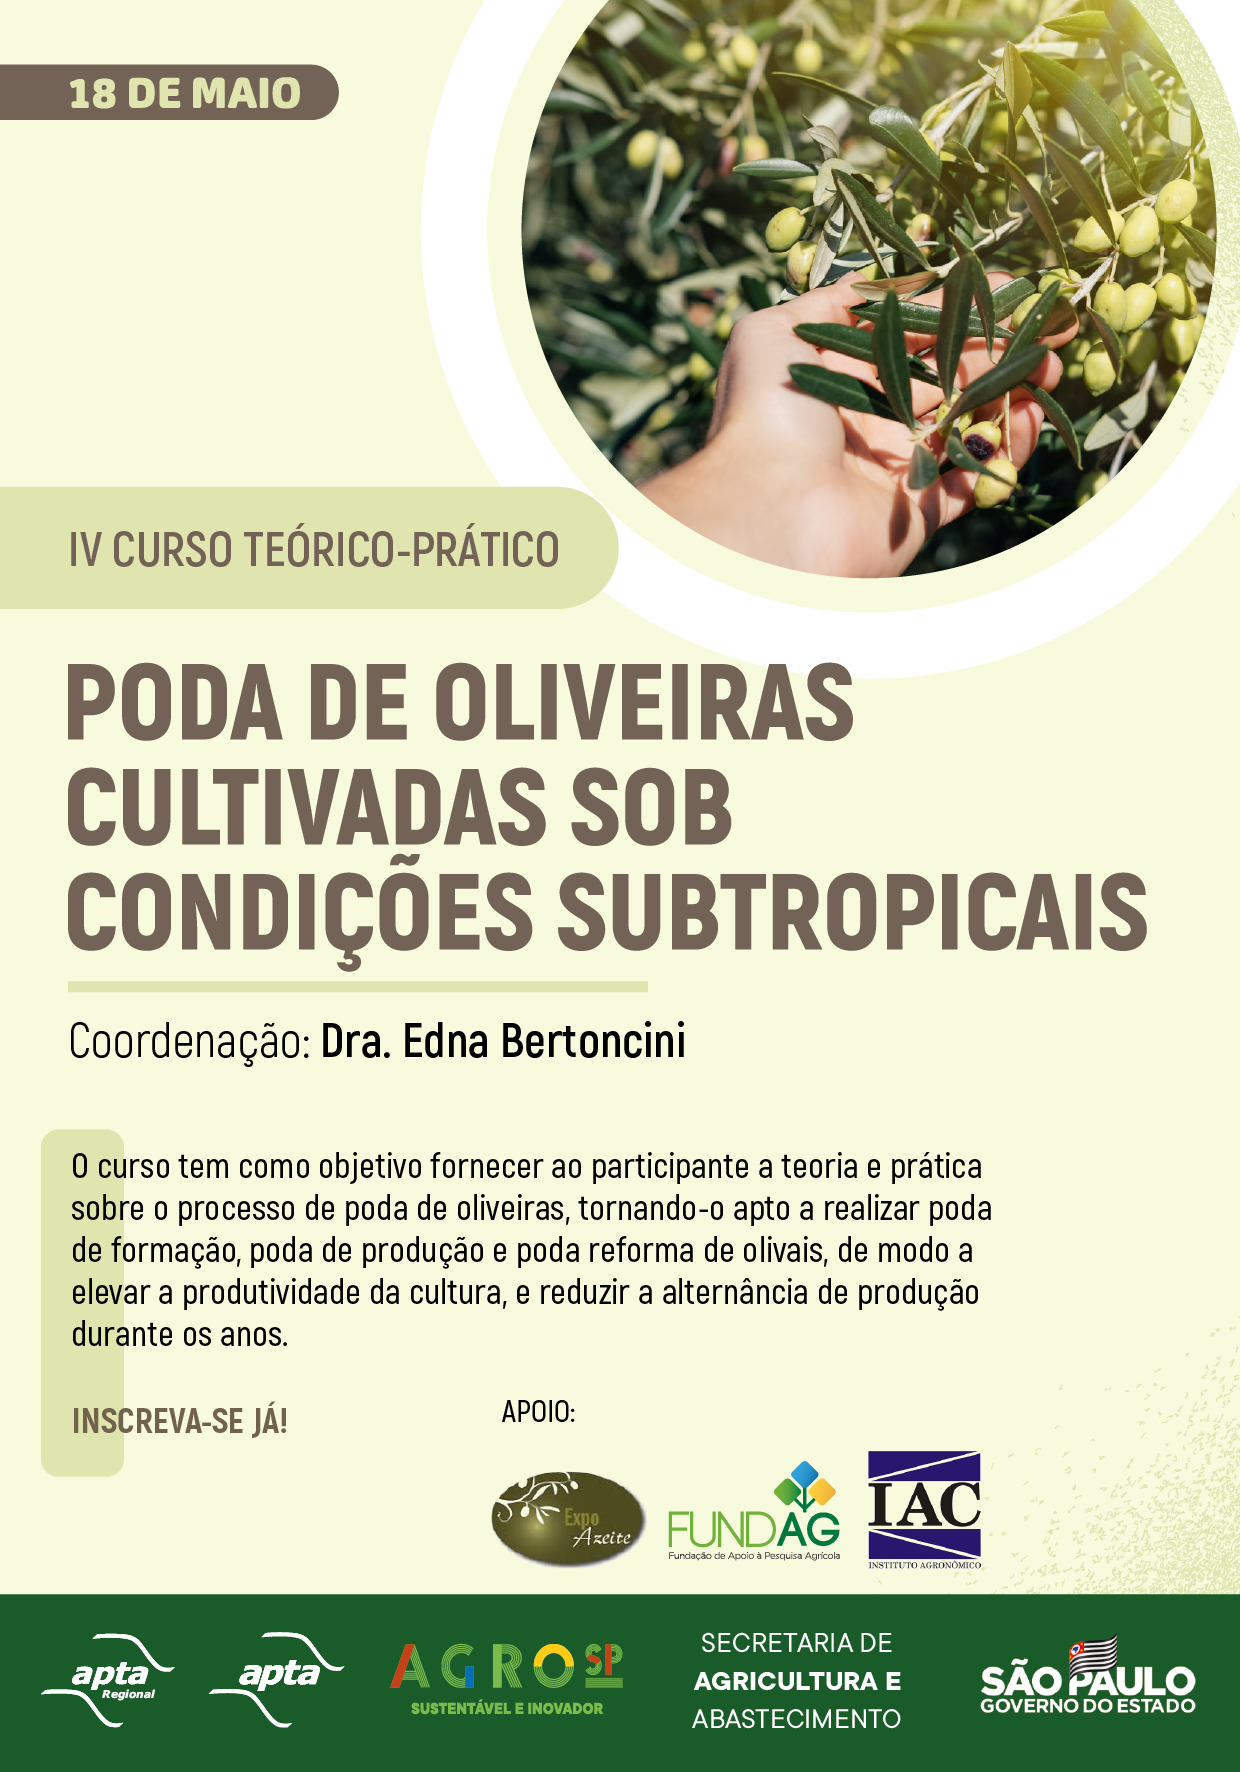 IV Curso Teórico-prático de Poda de Oliveiras Cultivadas sob Condições Subtropicais